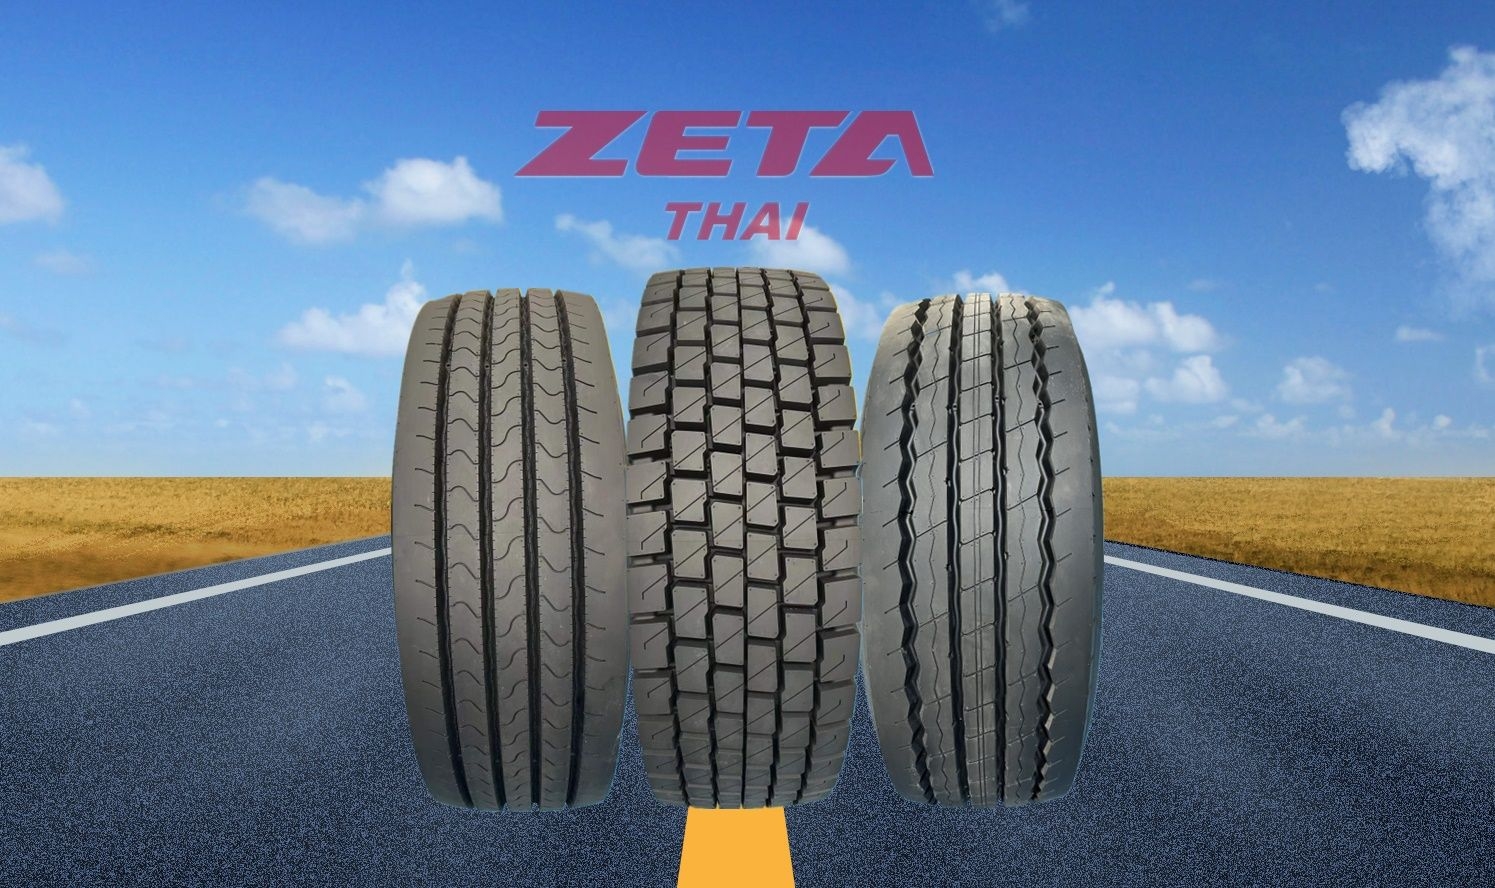 Die neue, ausschließlich in Thailand produzierte Zeta-Nutzfahrzeugreifenserie wird das „europäische Sortiment“ von SD-International sein.